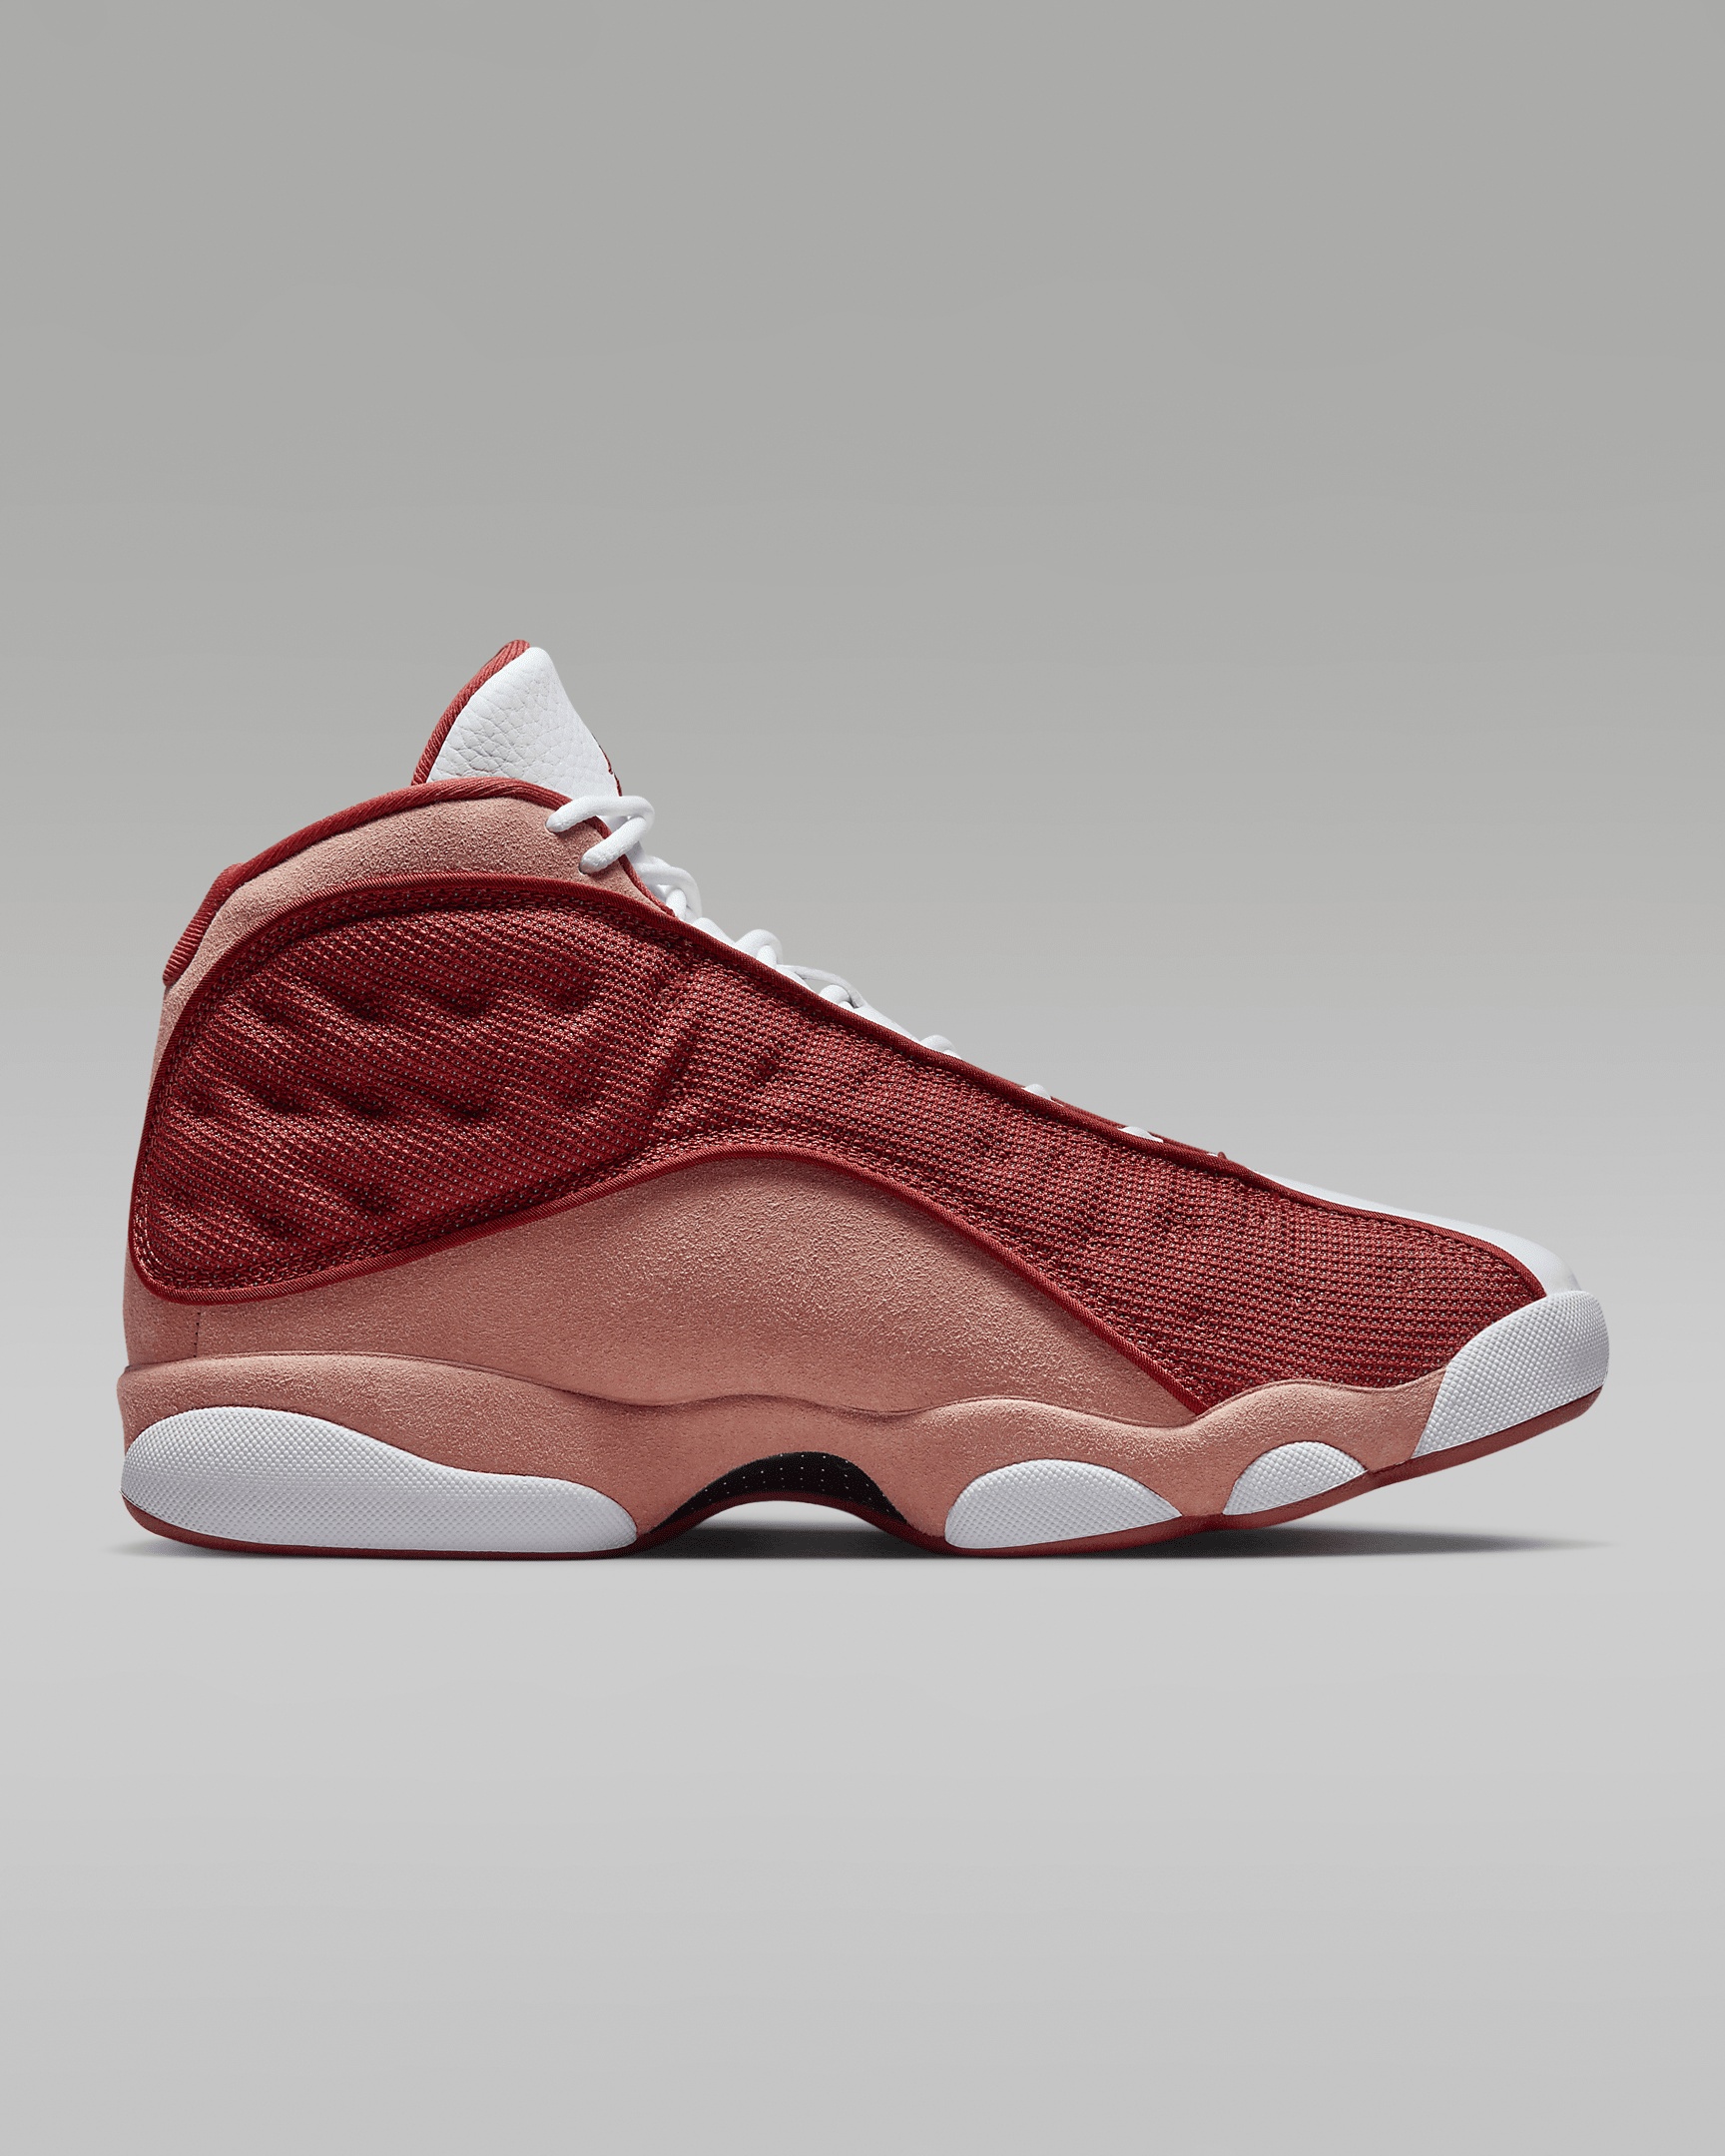 Air Jordan 13 Retro "Dune Red" Men's Shoes - 3